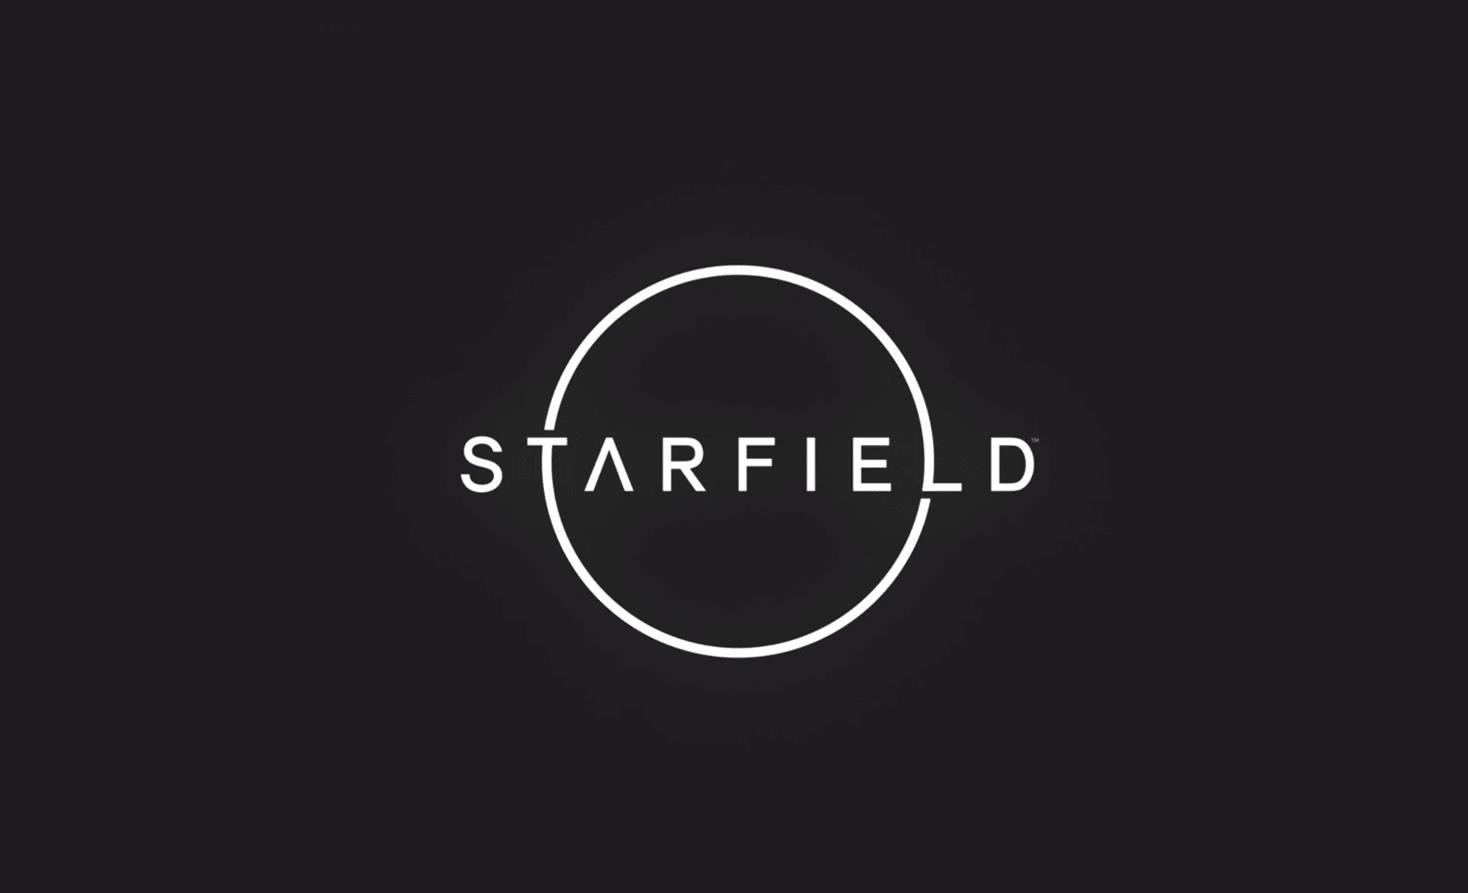 Starfield pourrait apparaitre lors de lE3 2021 en juin FecUJnl 1 1